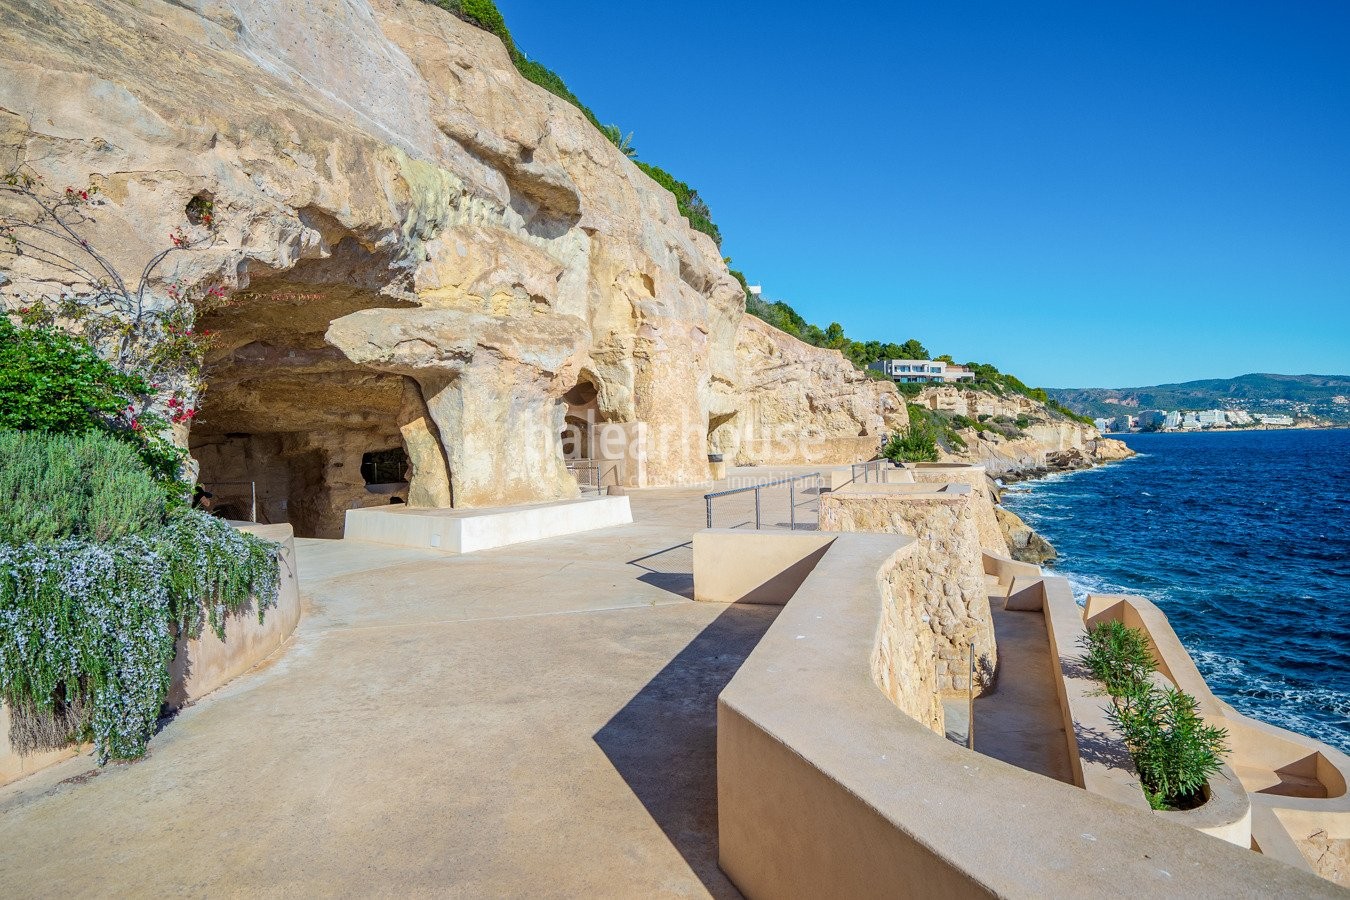 Villa de excepcional arquitectura fundida con las mejores vistas a la bahía y acceso directo al mar.